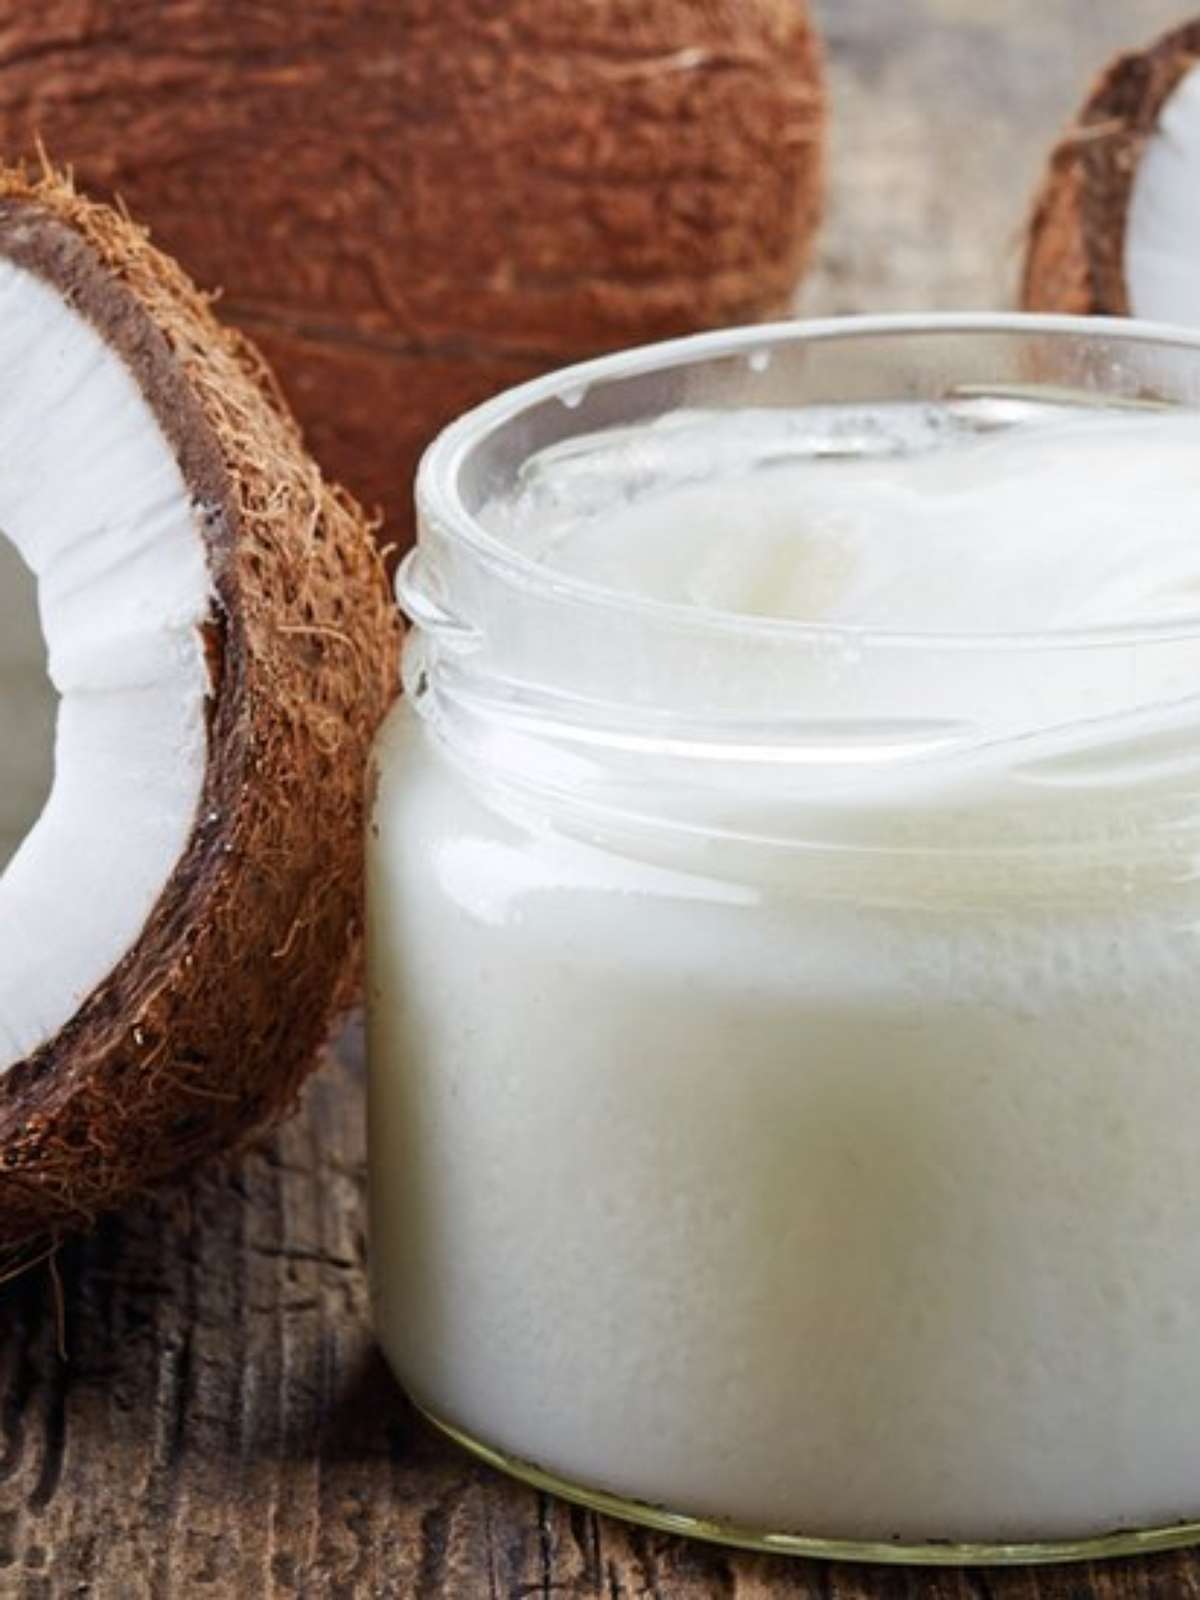 Óleo de coco faz tão mal à saúde quanto gordura animal e manteiga